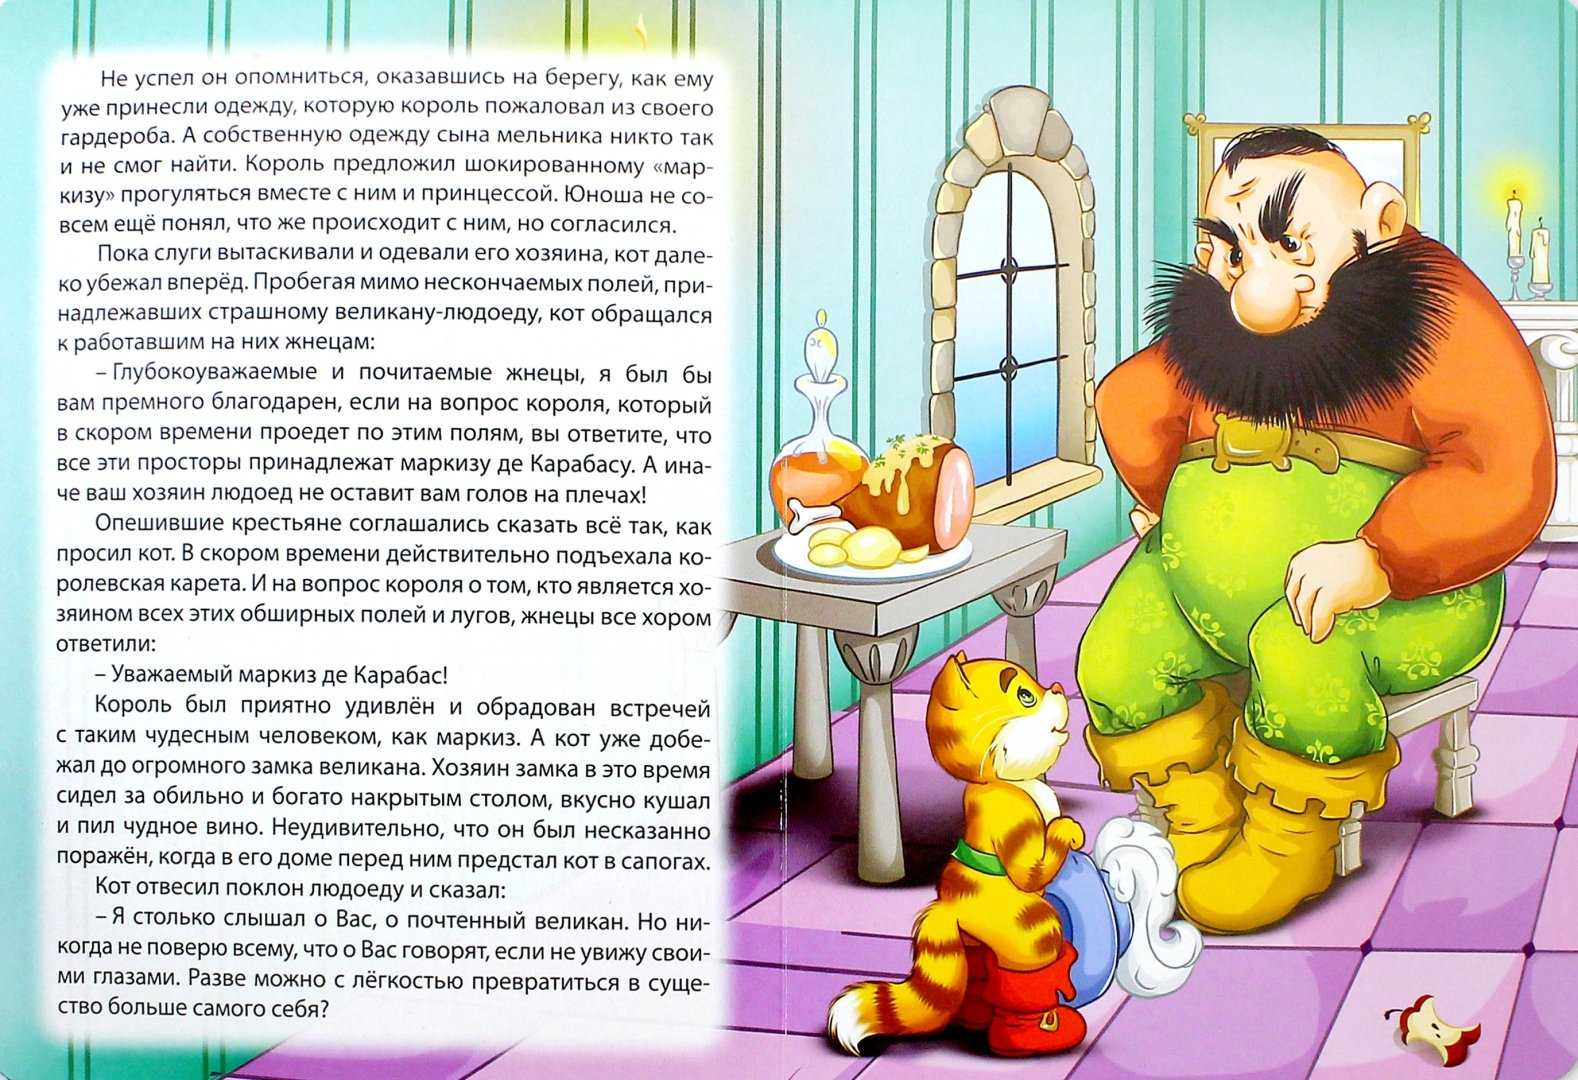 "кот в сапогах": краткое содержание, история создания :: syl.ru